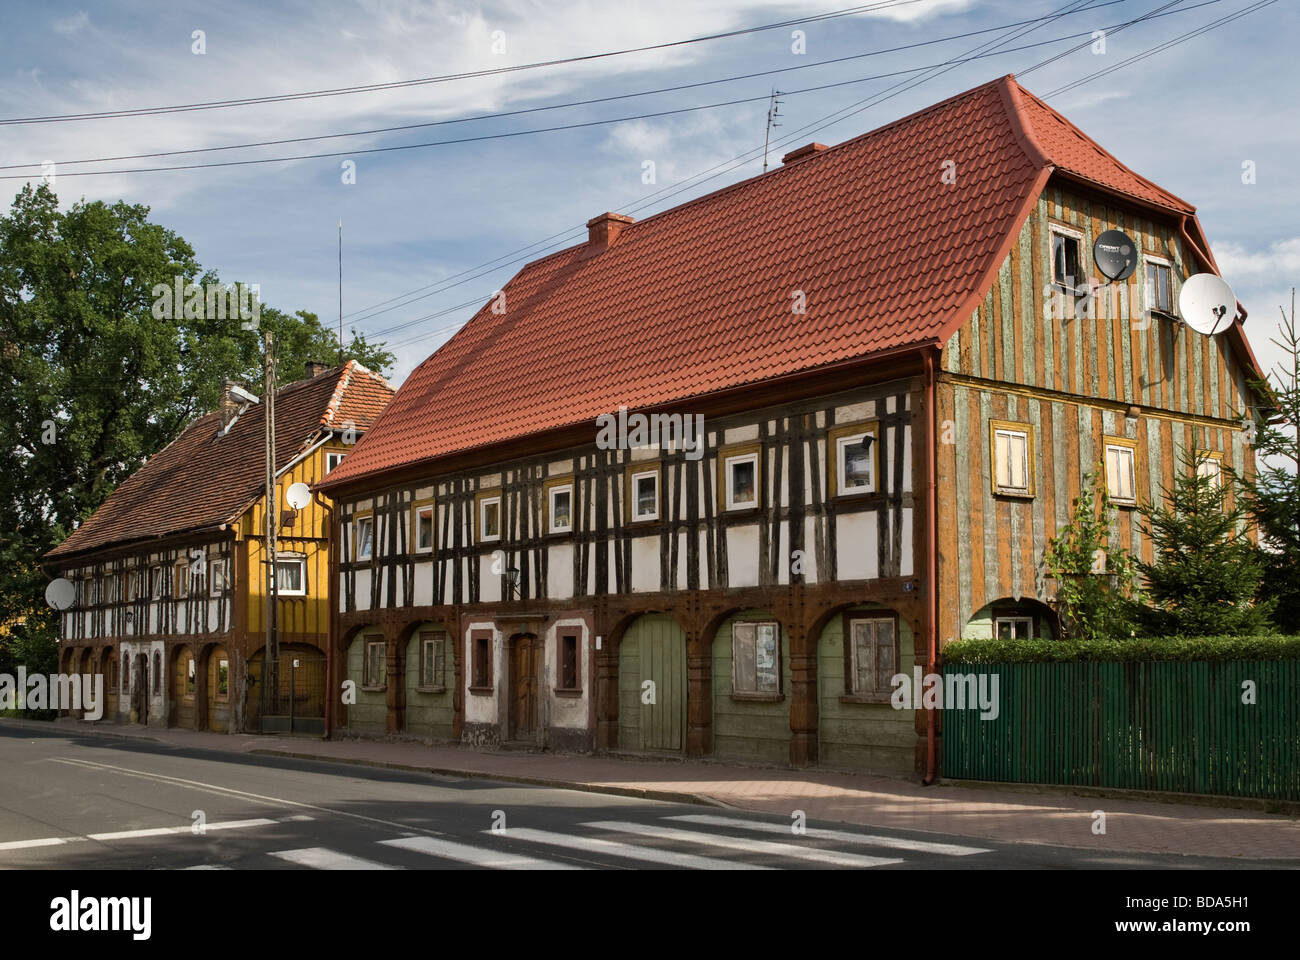 Maisons à colombages de tisserands de Lusace dans la région de Basse Silésie Pologne Bogatynia Banque D'Images